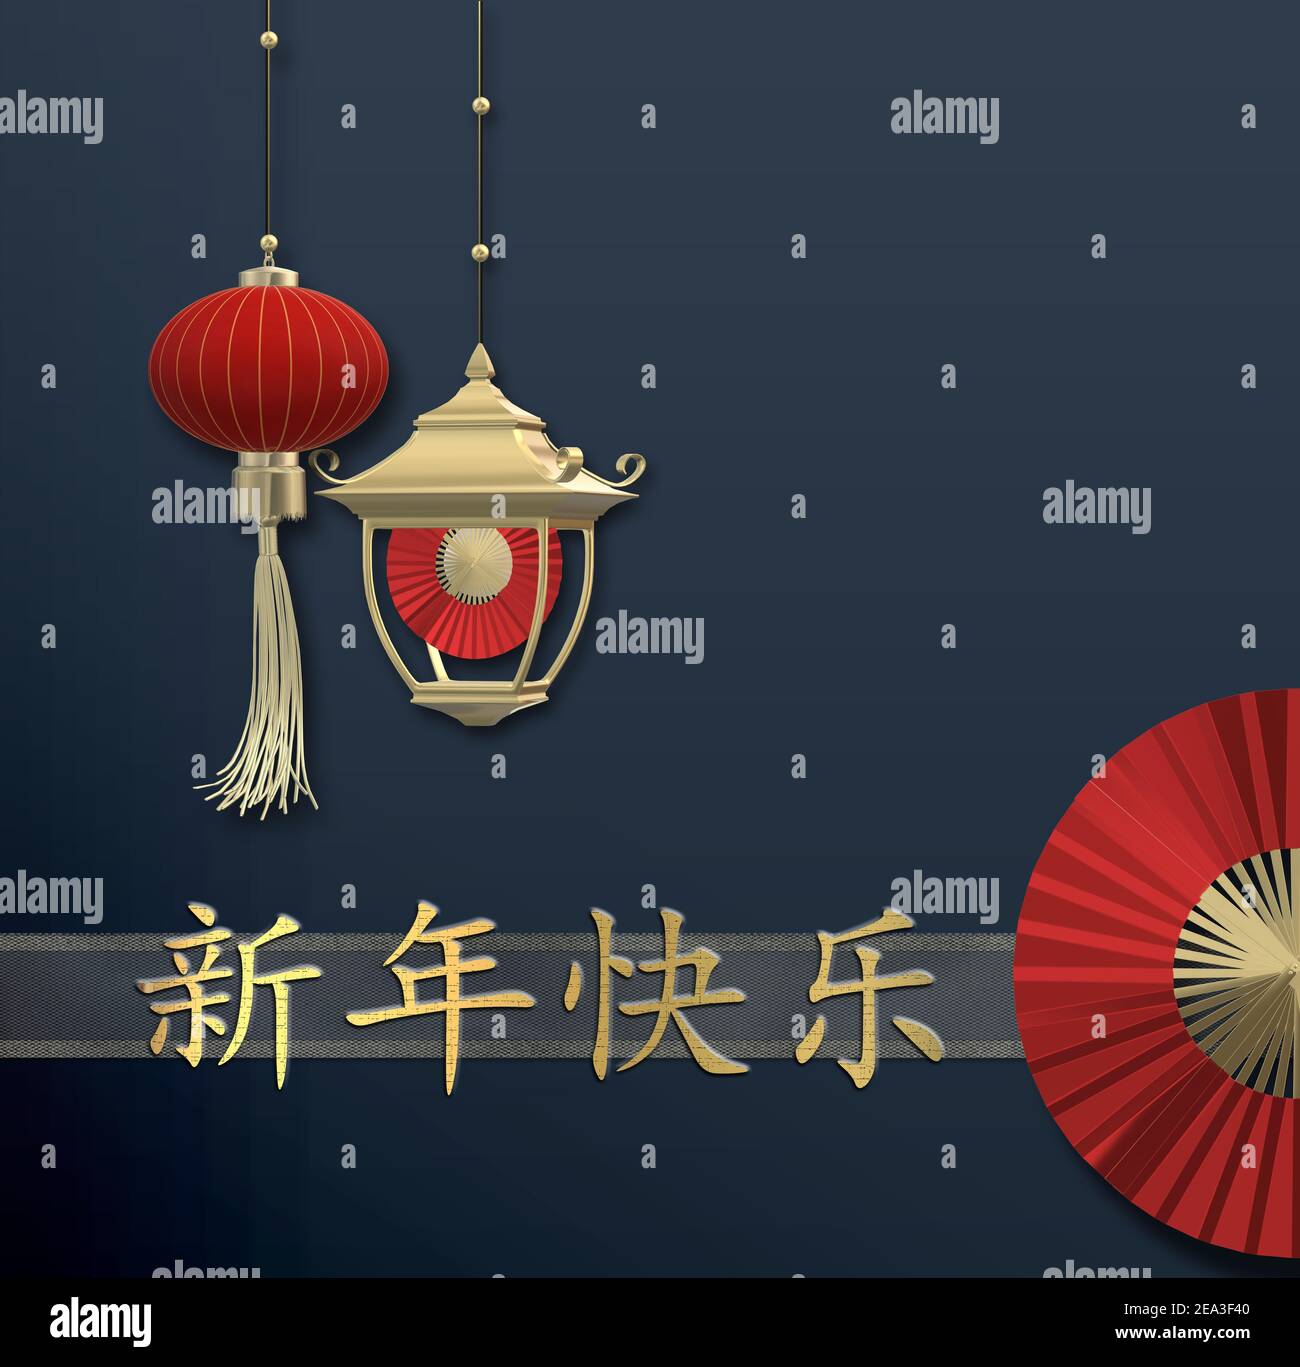 Chinesische Neujahrs Dekoration auf blauem Hintergrund. Rote Papierlaternen, roter Ventilator über blau. Chinesische Übersetzung Happy Chinese New Year. Moderne abstrakte Ele Stockfoto